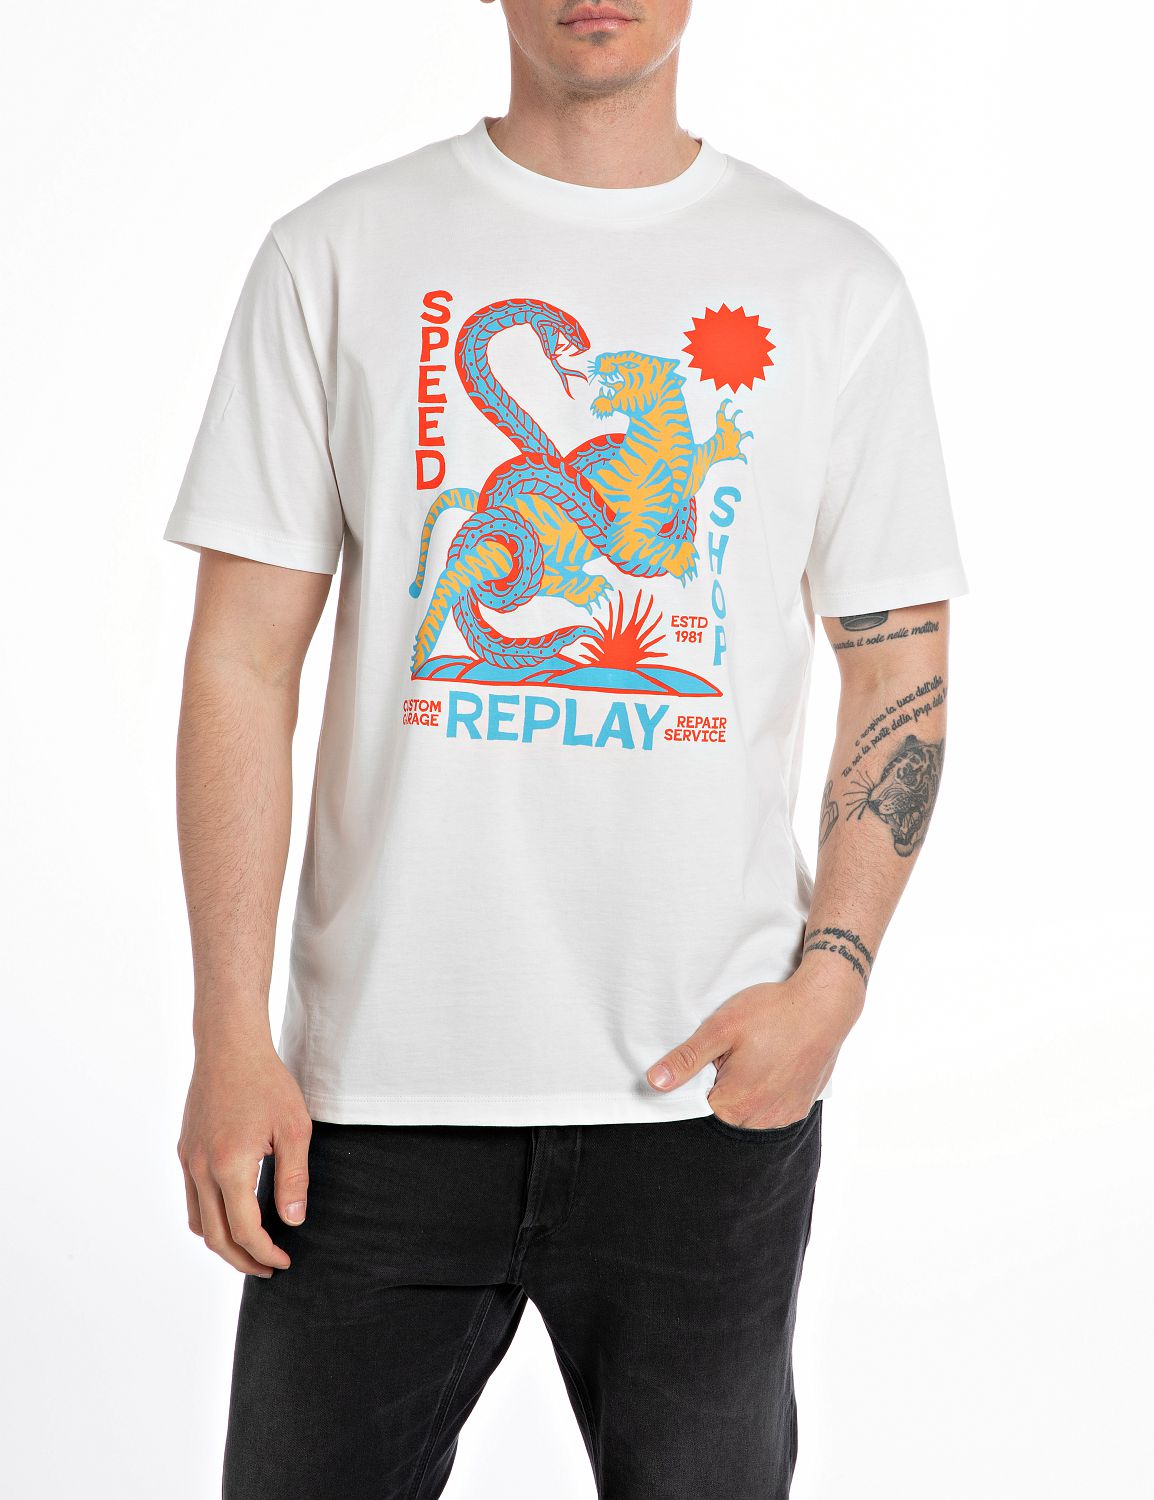 Replay T-Shirt von Replay